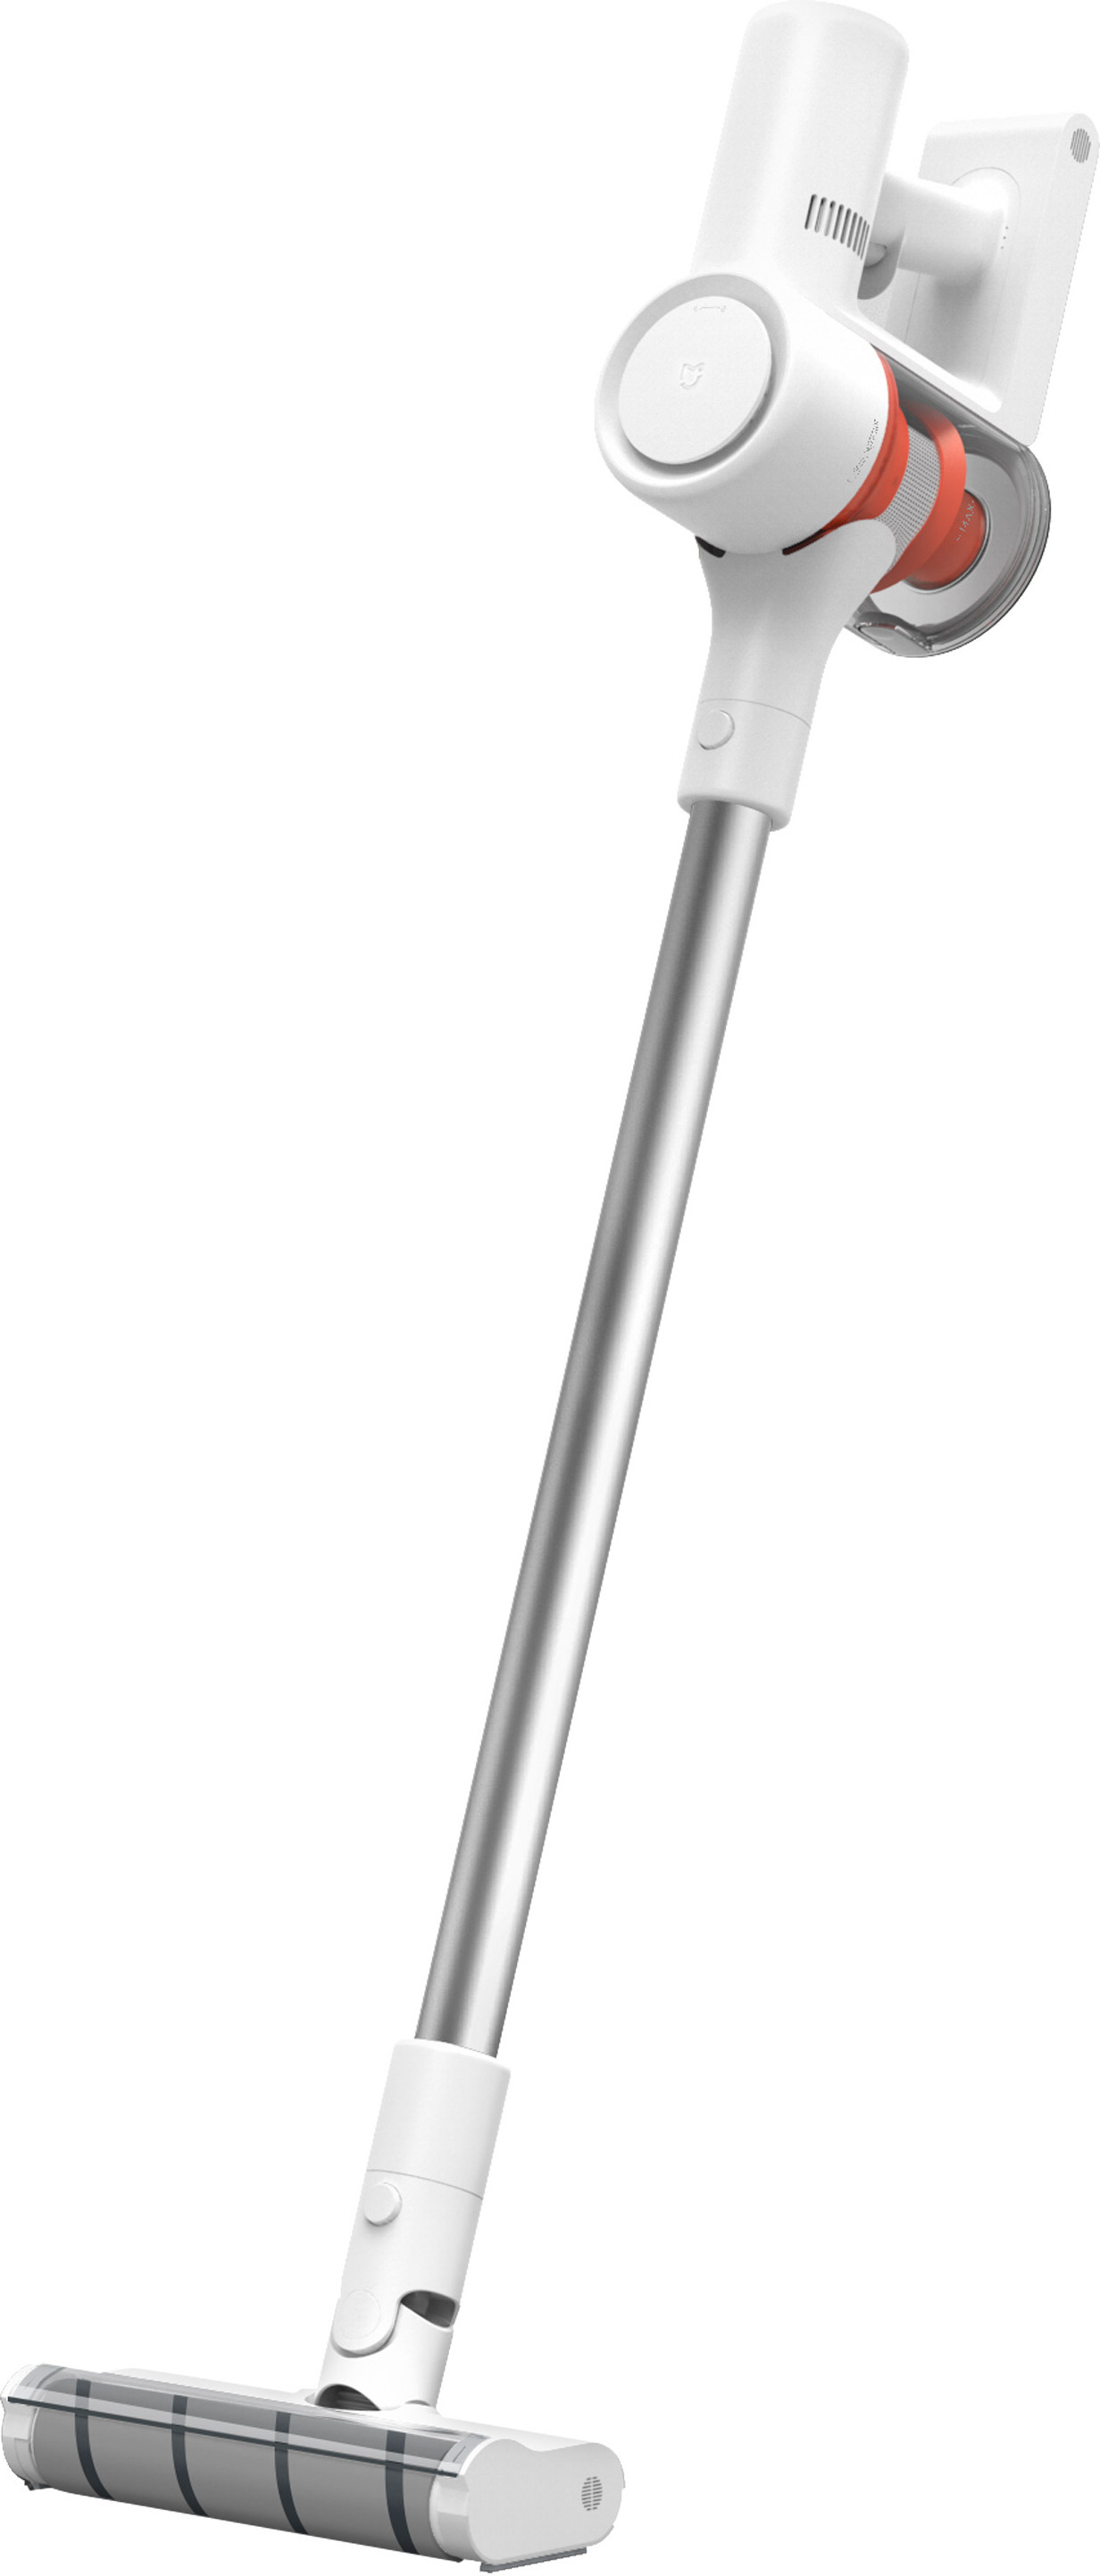 Лучший вертикальный пылесос xiaomi. Беспроводной пылесос Xiaomi Mijia 1c. Пылесос Xiaomi mi Handheld Vacuum. Пылесос Xiaomi Mijia scwxcq02zhm. Вертикальный пылесос Xiaomi mi Handheld Vacuum Cleaner.